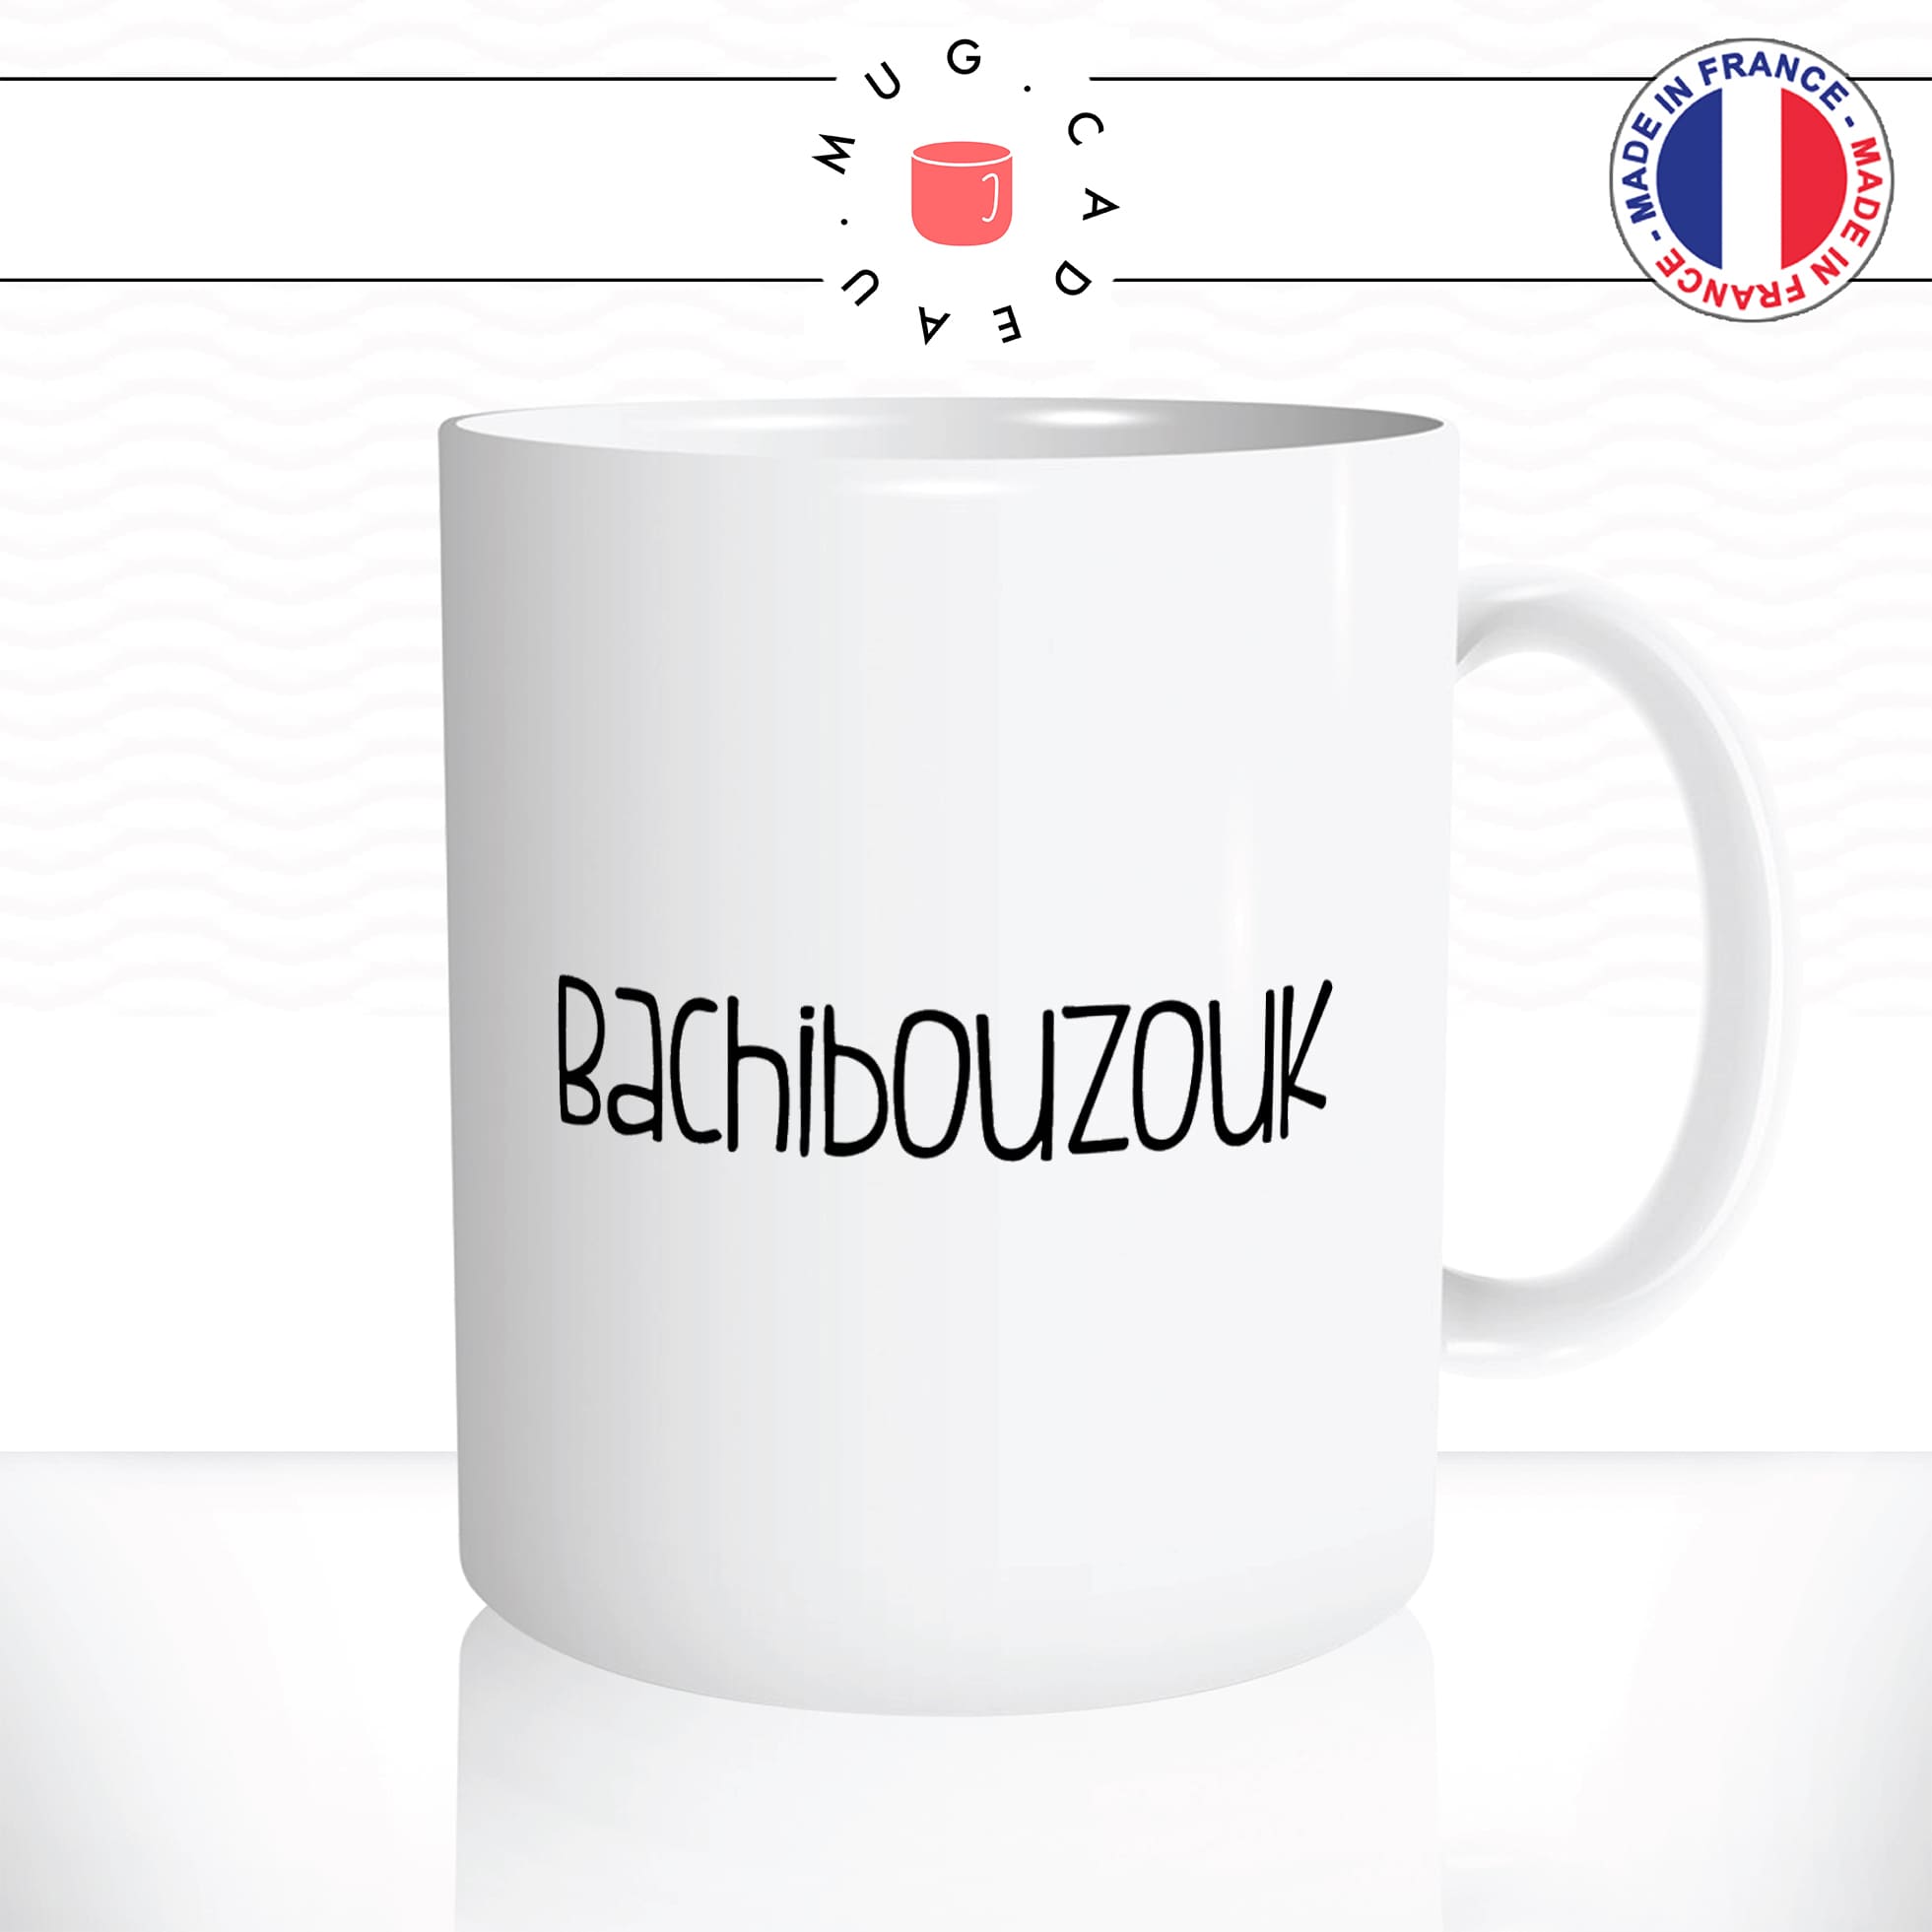 mug-tasse-blanc-unique-bachibouzouk-tintin-capitaine-hadock-homme-femme-humour-fun-cool-idée-cadeau-original-personnalisé2